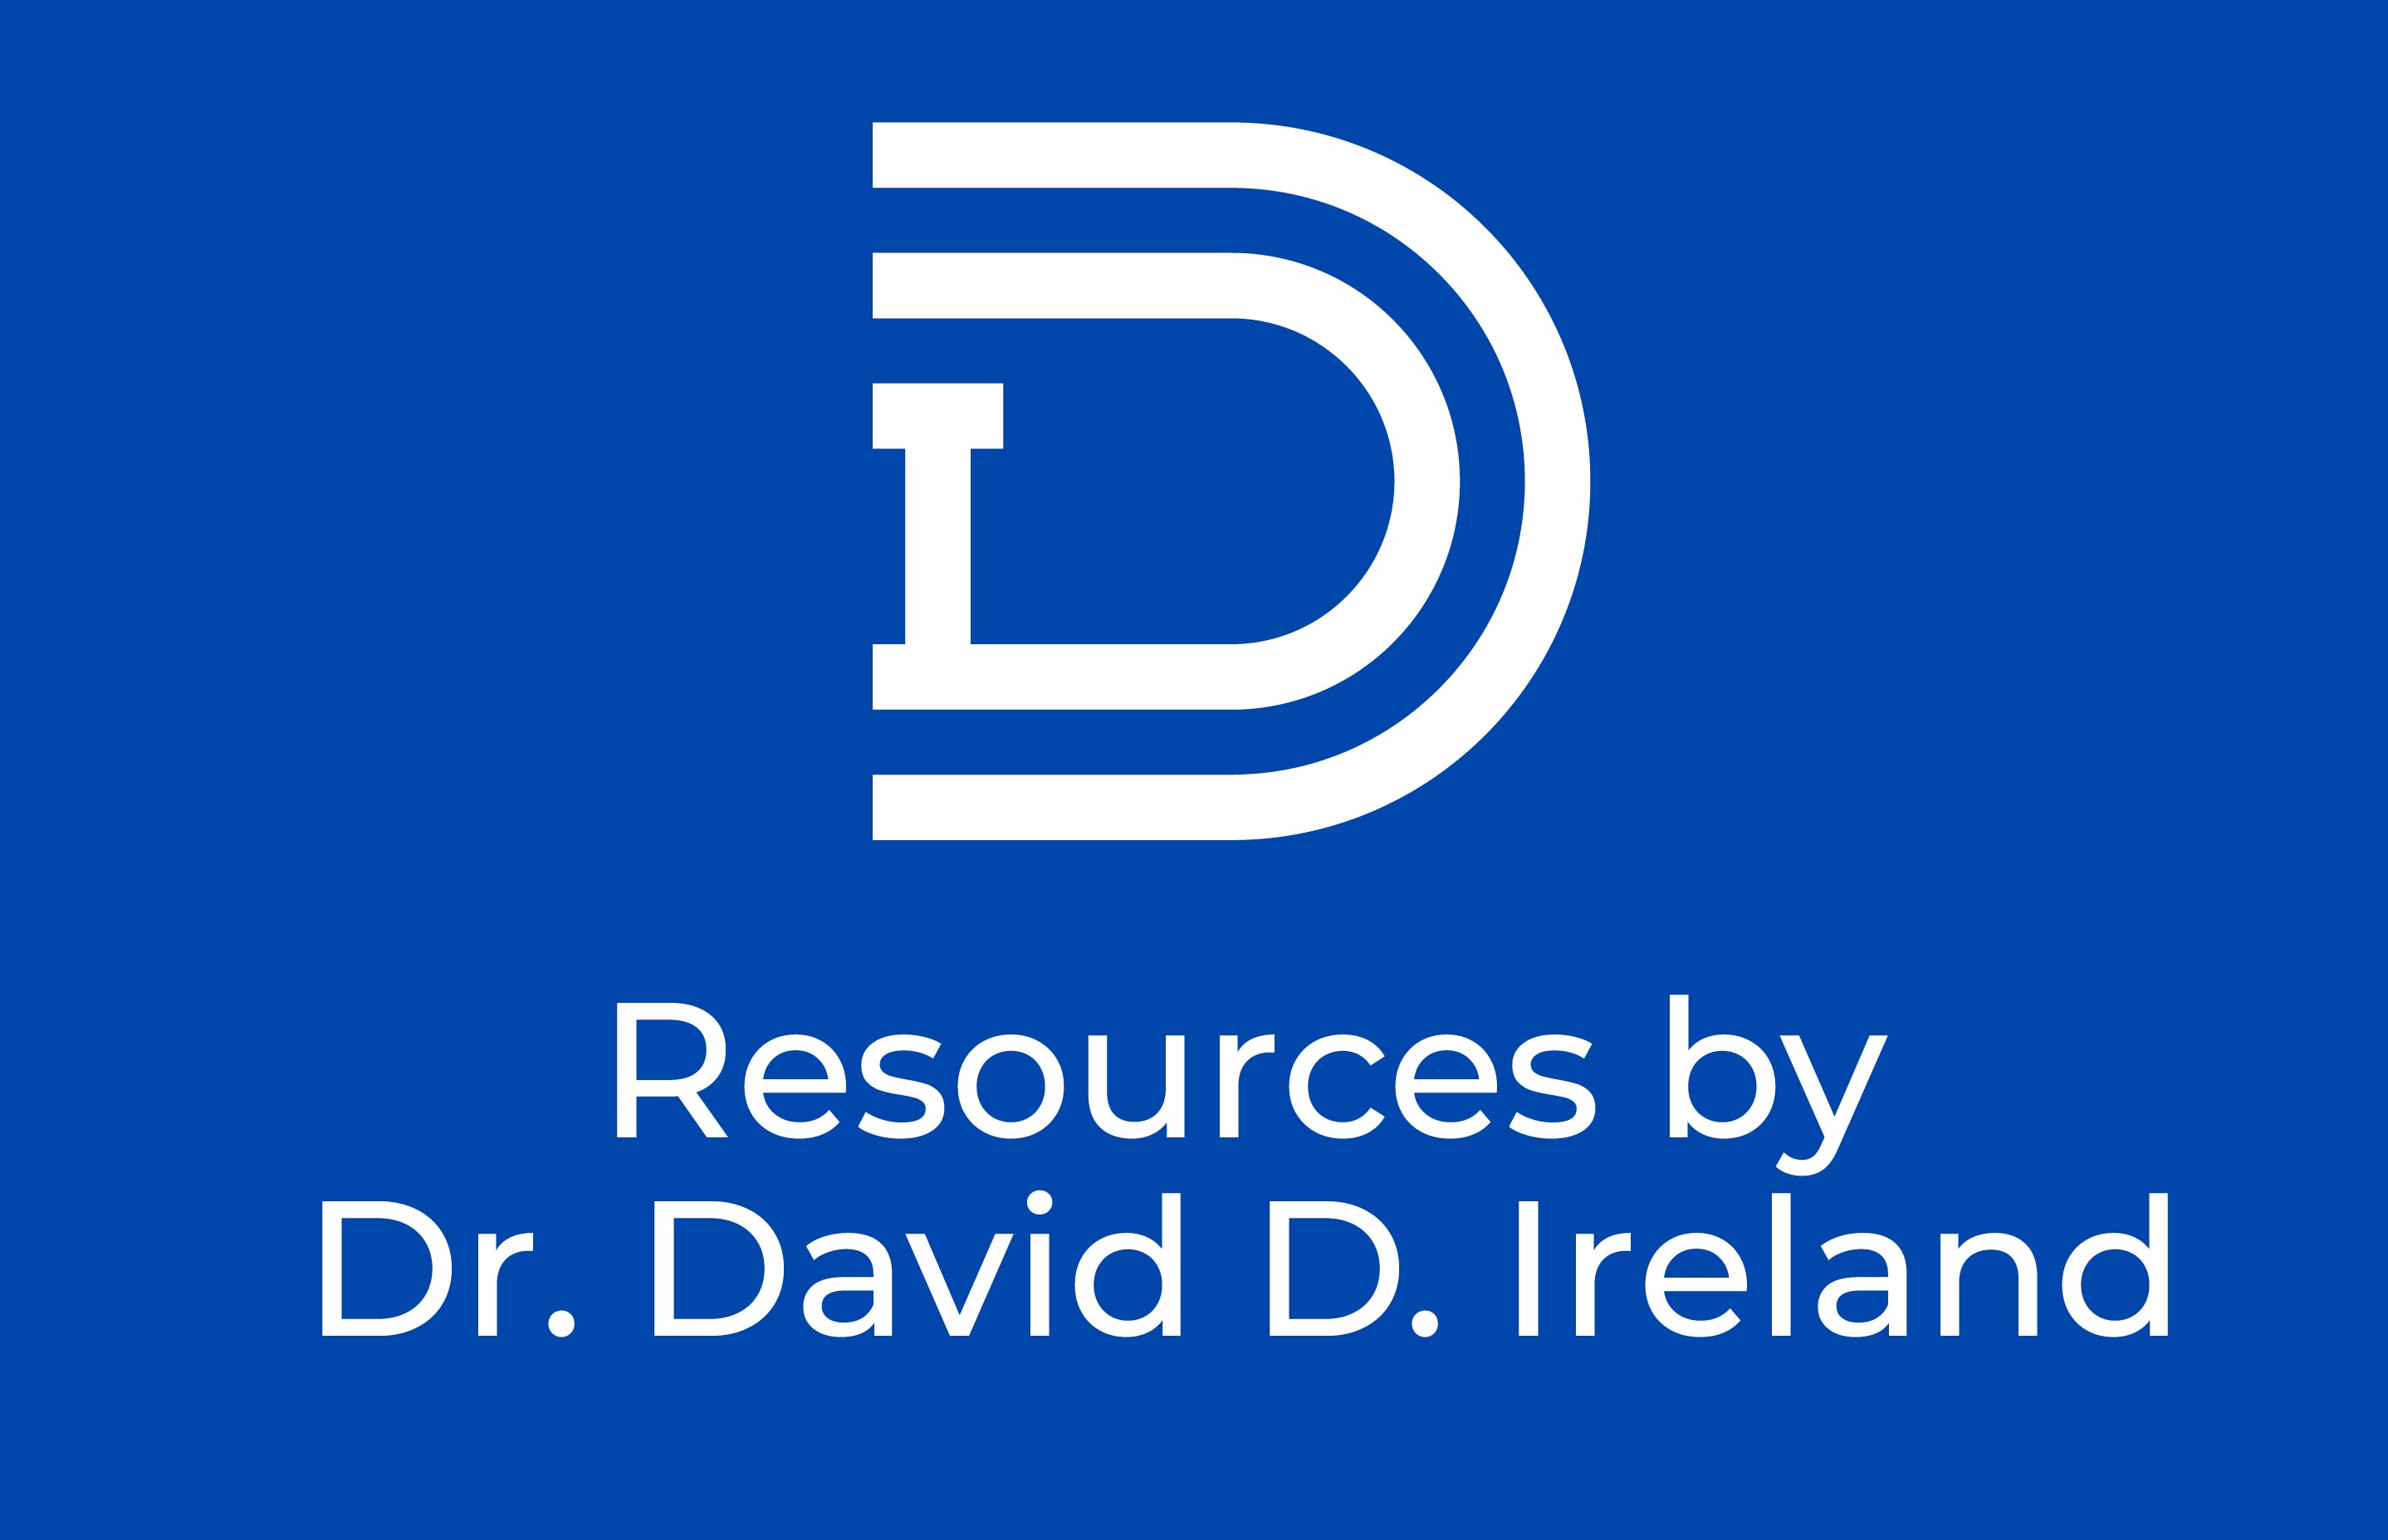 Resources by DDI